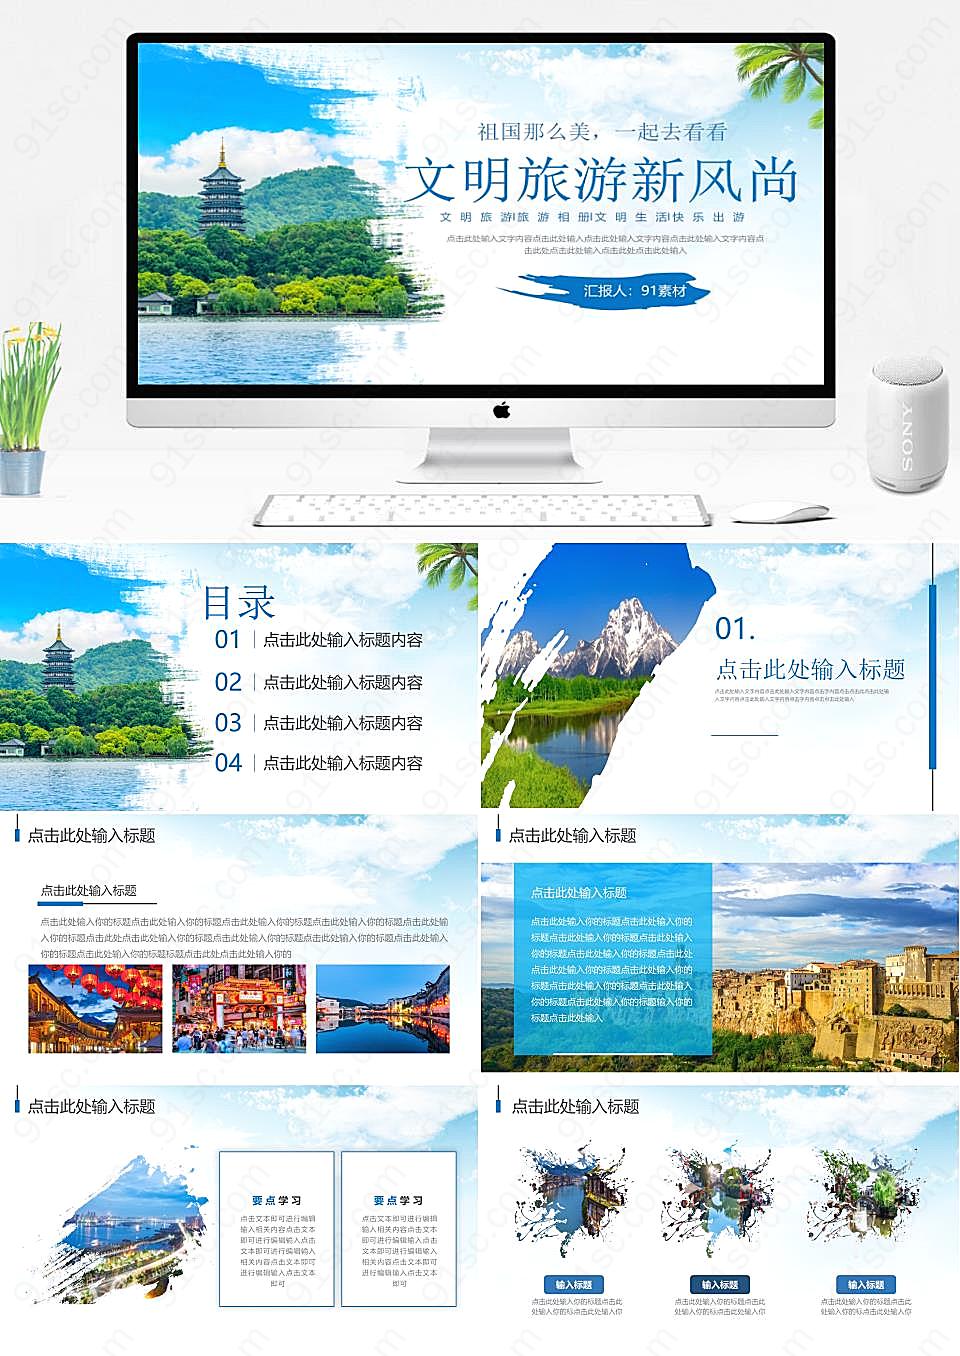 蓝色旅游新风尚生态文明、文明生活、快乐出游旅游旅行PPT模板下载